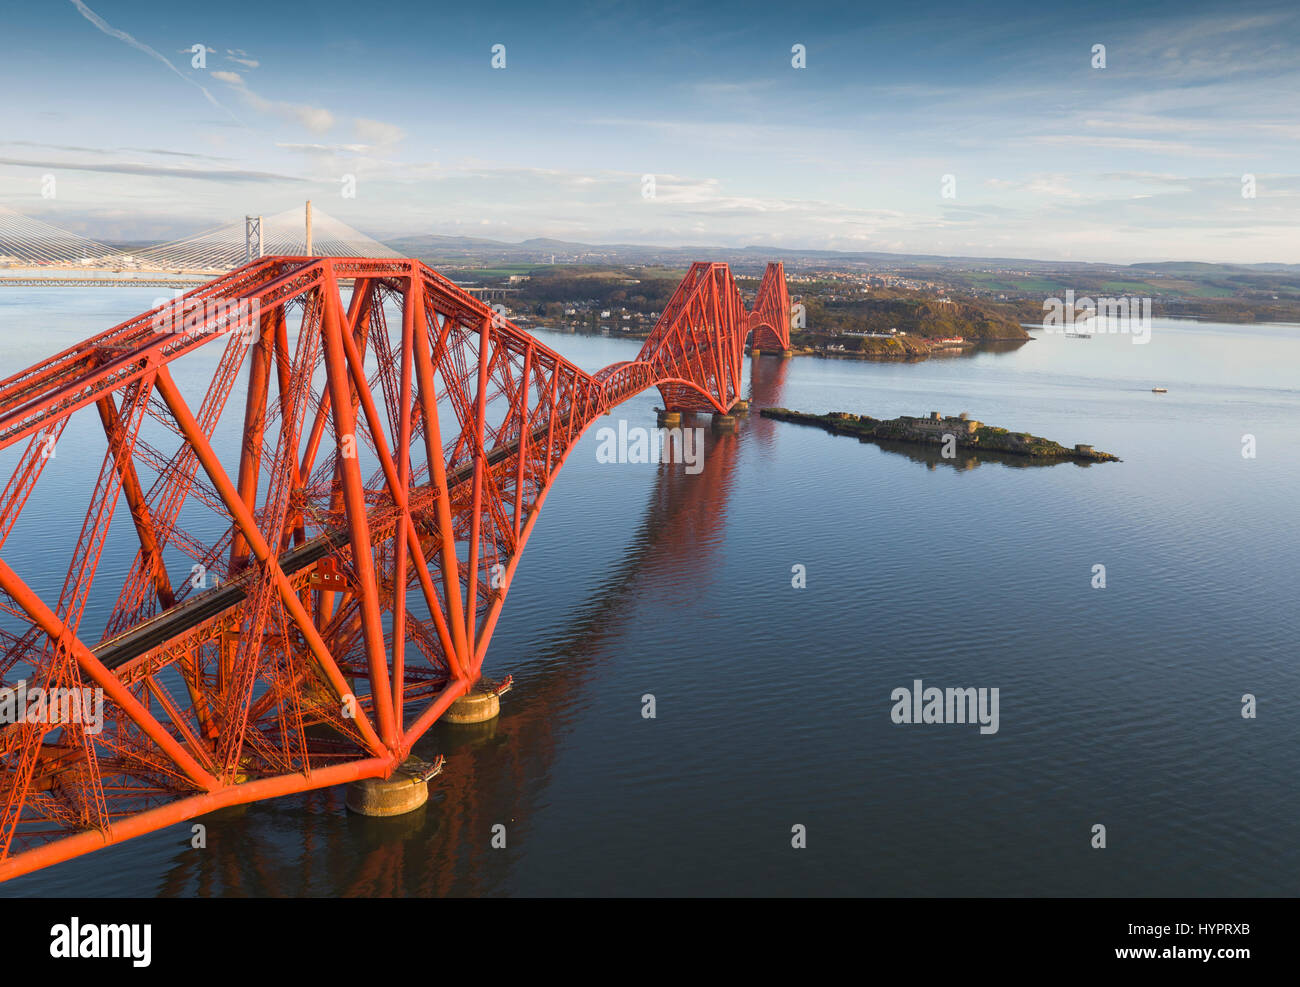 El puente ferroviario de Forth sobre el Firth of Forth, visto desde South Queensferry, Lothian, Escocia. Foto de stock